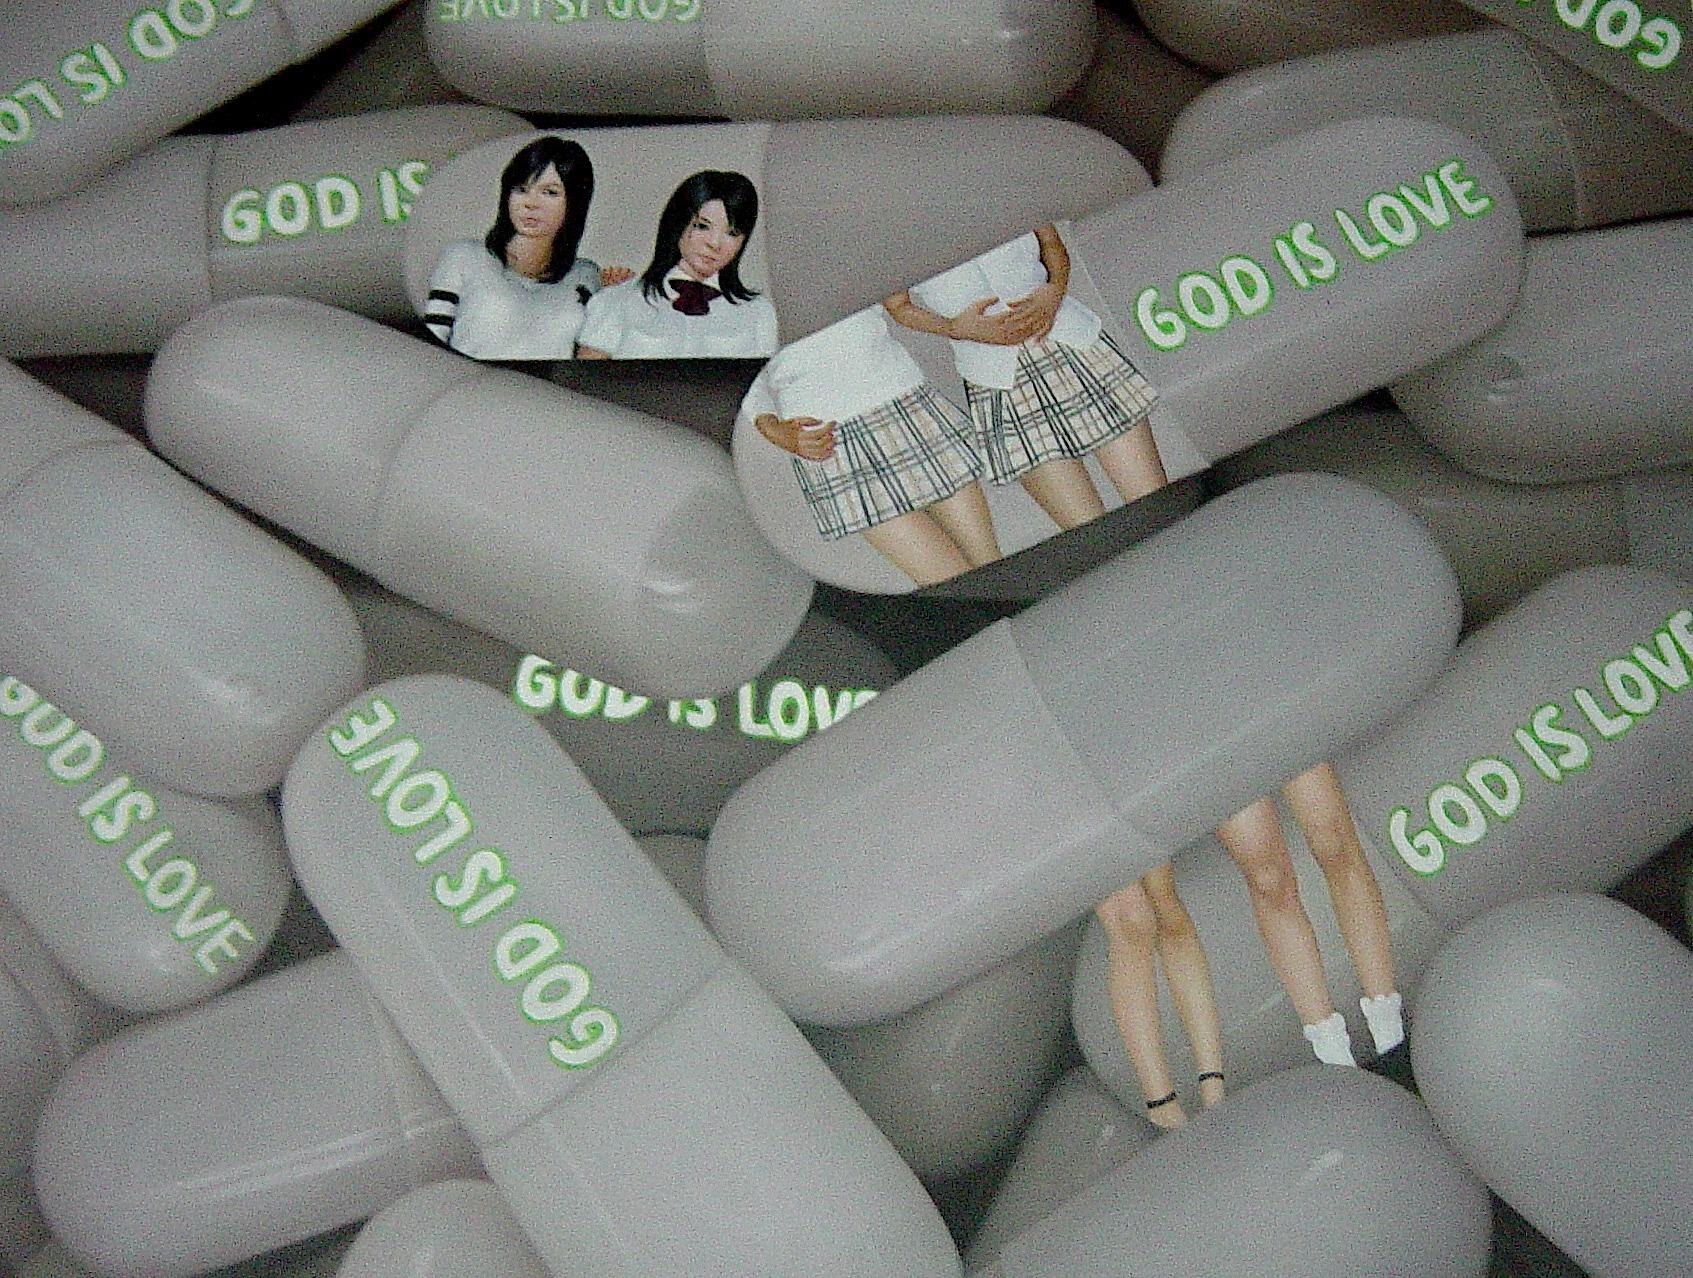 L'amour divin dans les capsules Couture : Fils divins - Painting de Tomomi Mishima